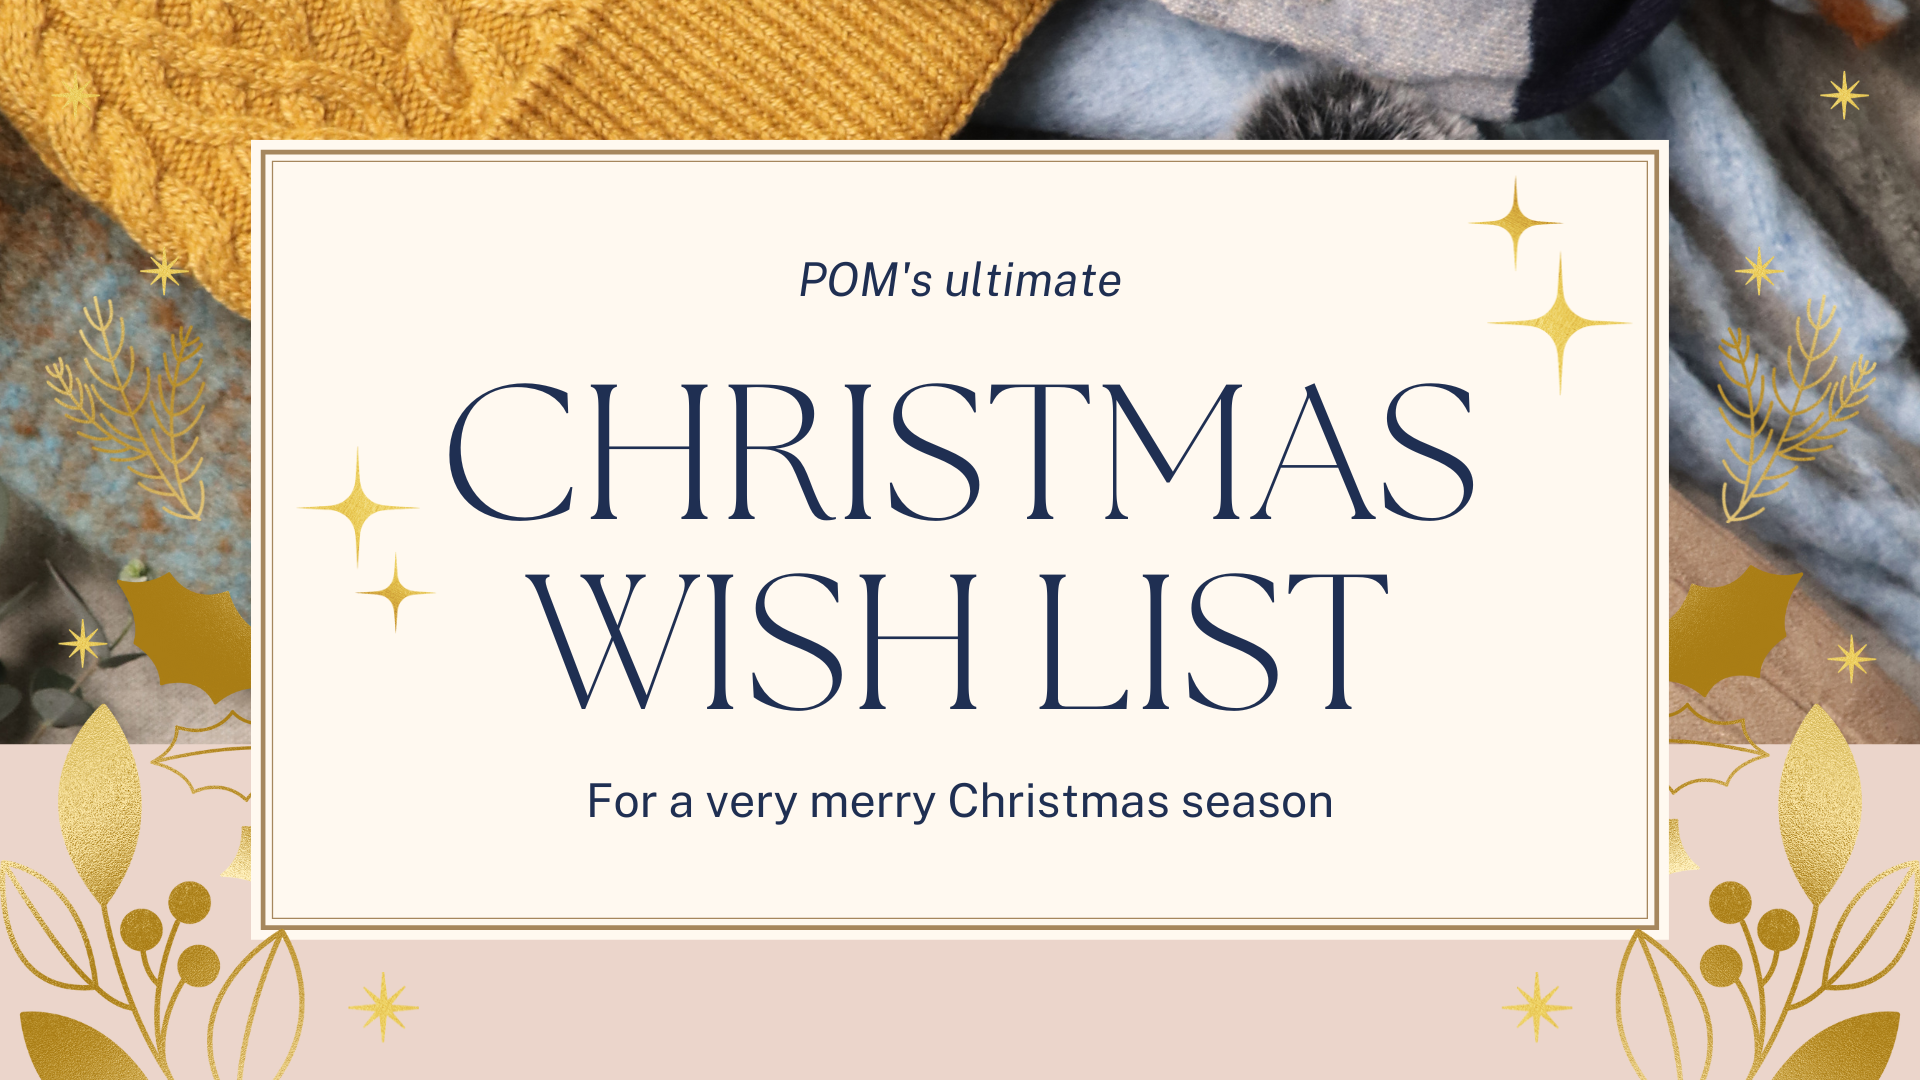 POM's Christmas wishlist